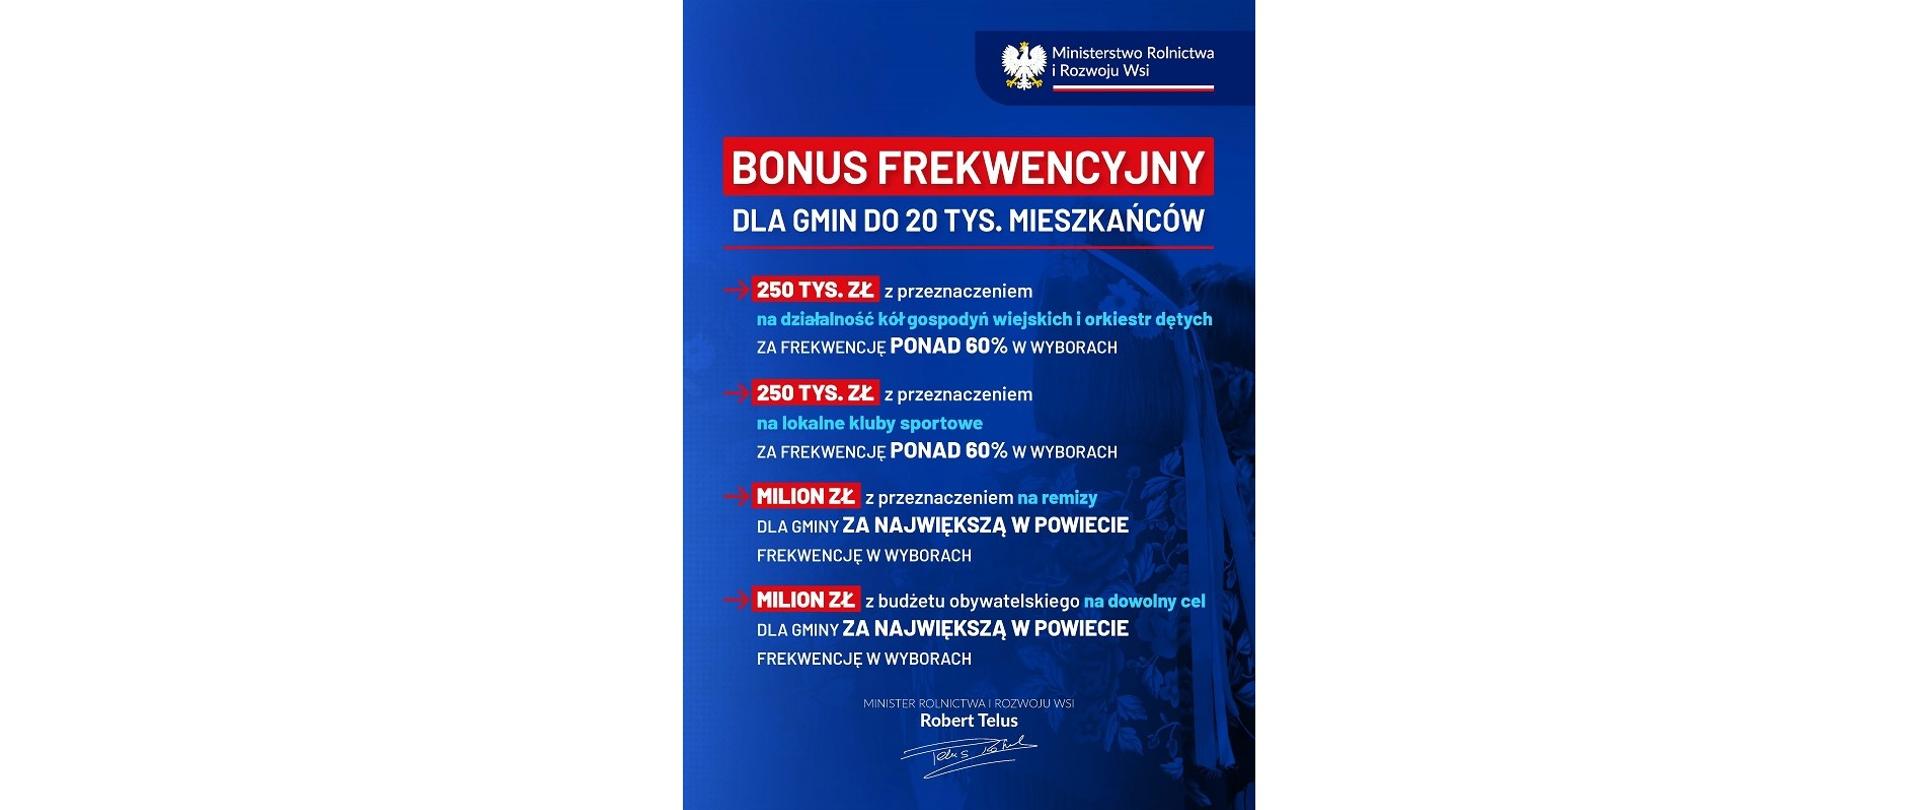 Plakat „Bonus frekwencyjny dla gmin do 20 tys. mieszkańców”. Ministerstwo Rolnictwa i Rozwoju Wsi